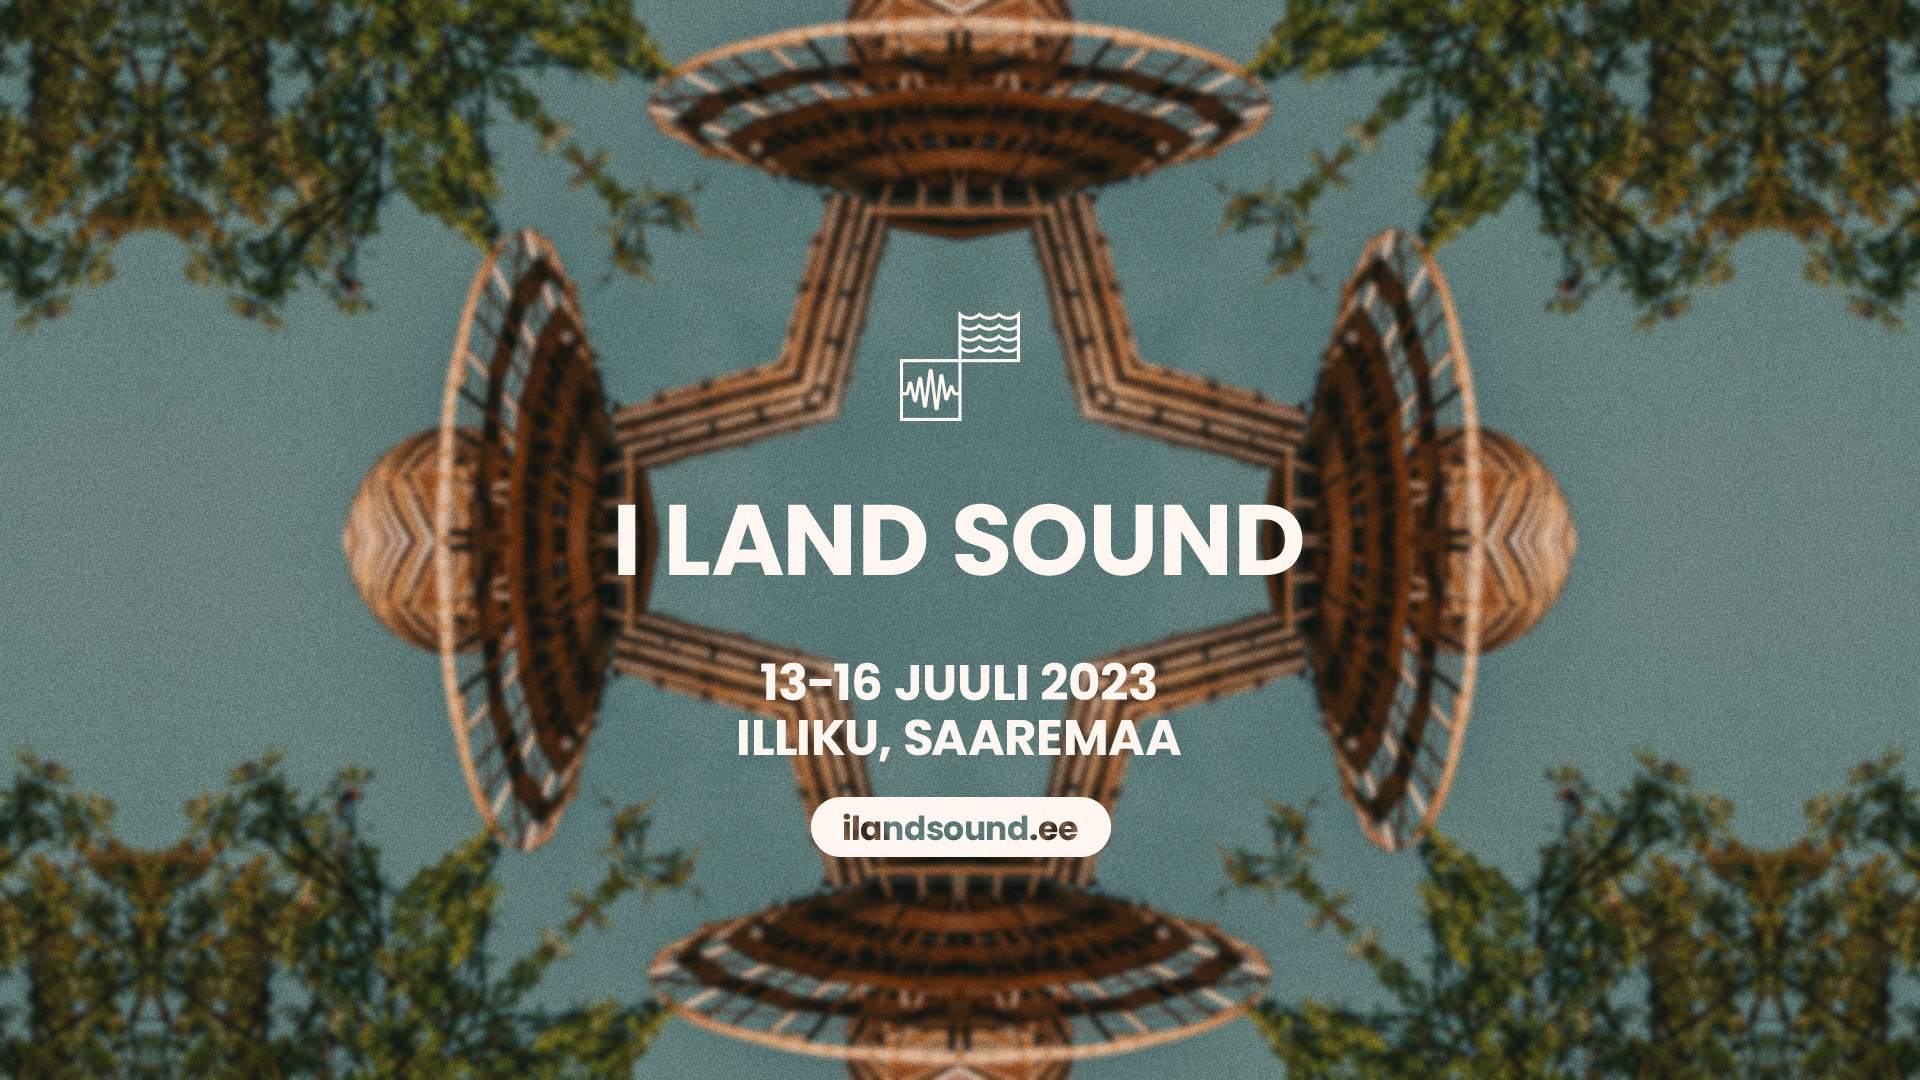 I Land Sound 2023 - フライヤー表